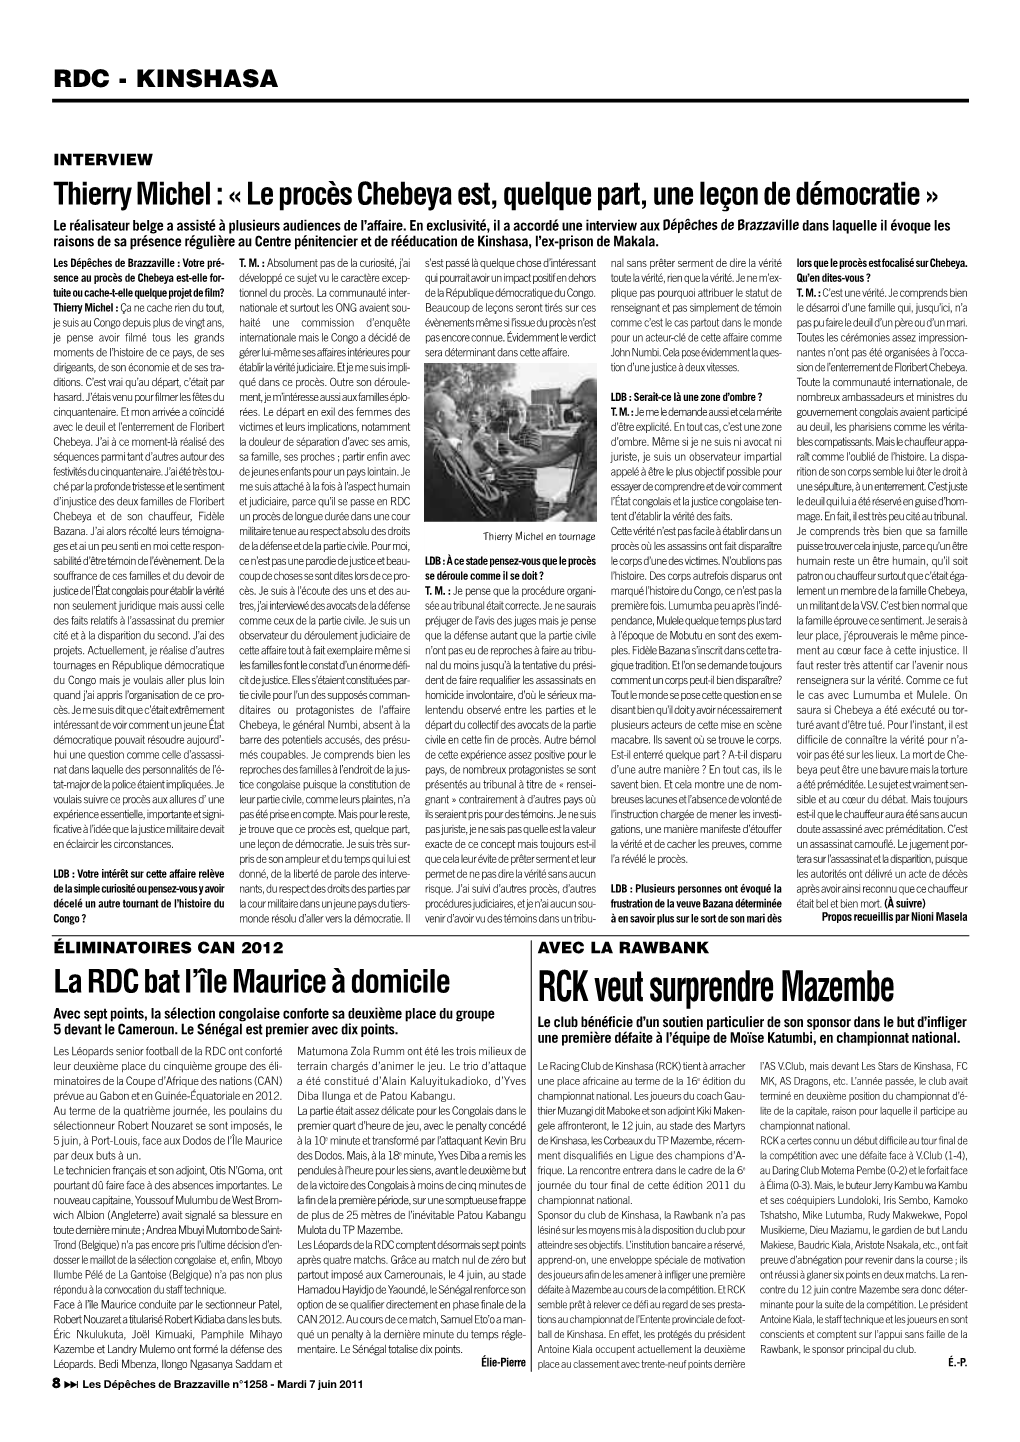 RCK Veut Surprendre Mazembe Avec Sept Points, La Sélection Congolaise Conforte Sa Deuxième Place Du Groupe 5 Devant Le Cameroun